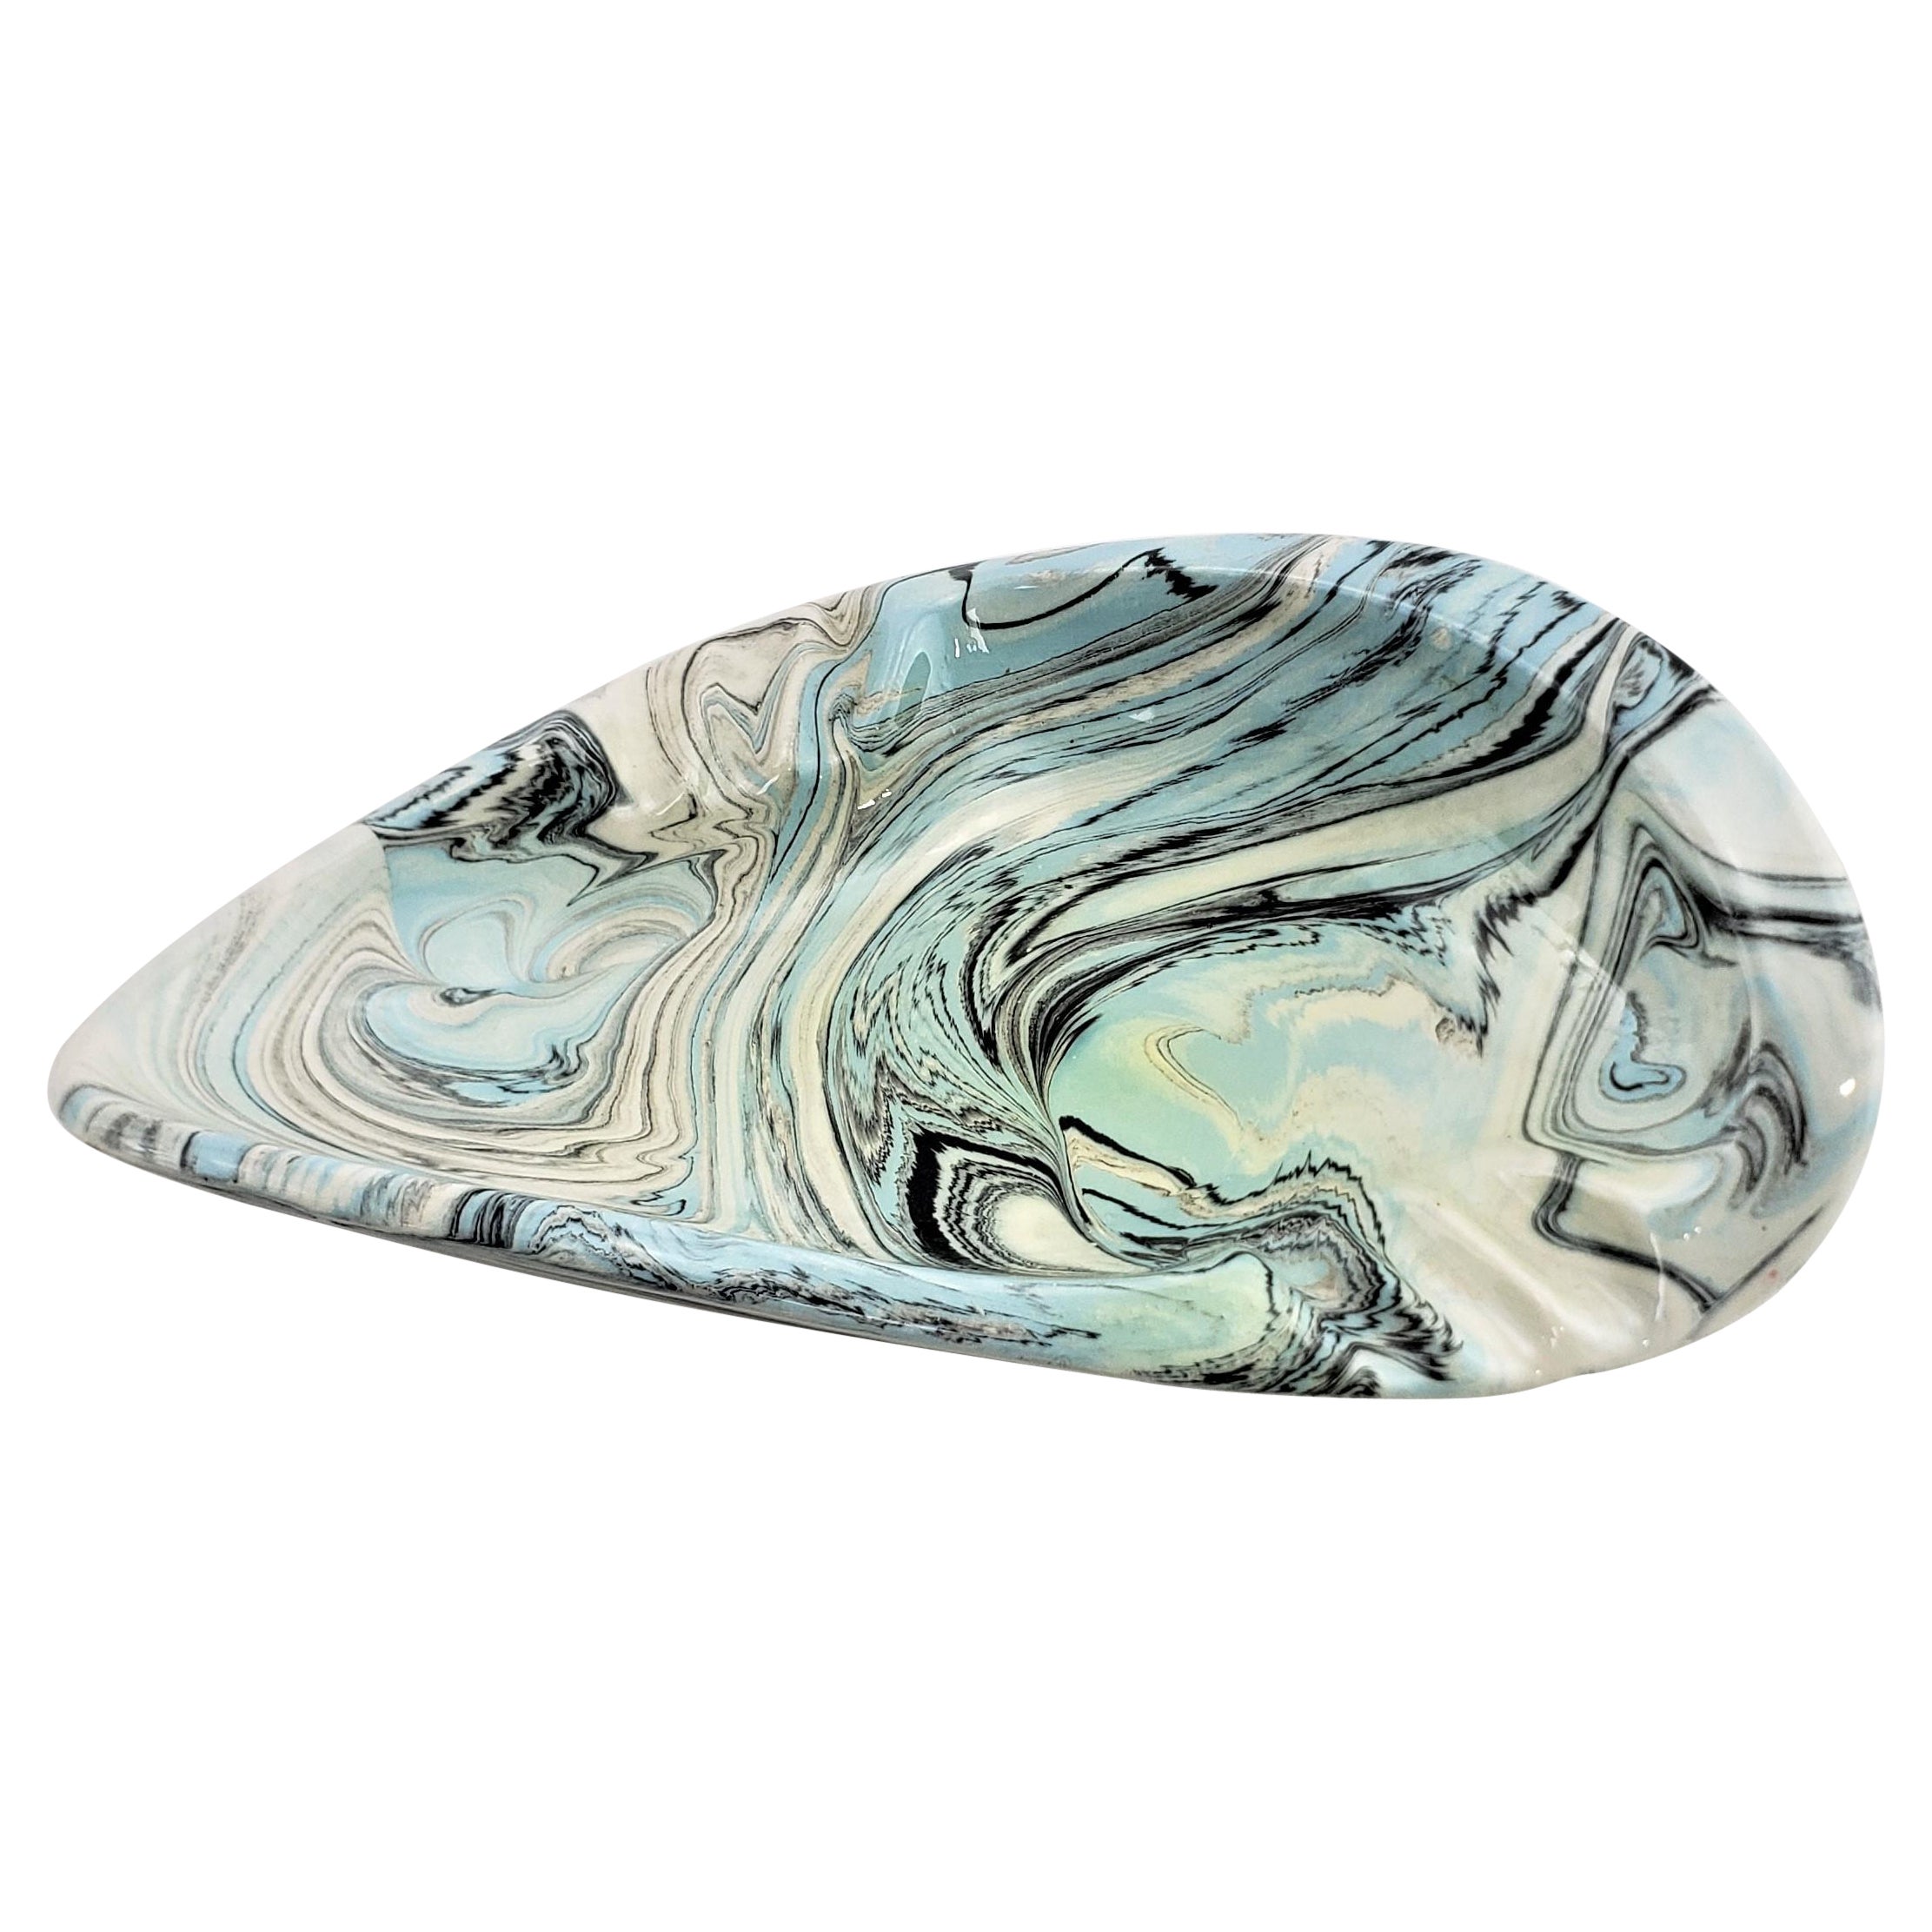 Signed Mid-Century Modern Biomorphic Shaped Ceramic Ashtray with Swirled Glaze